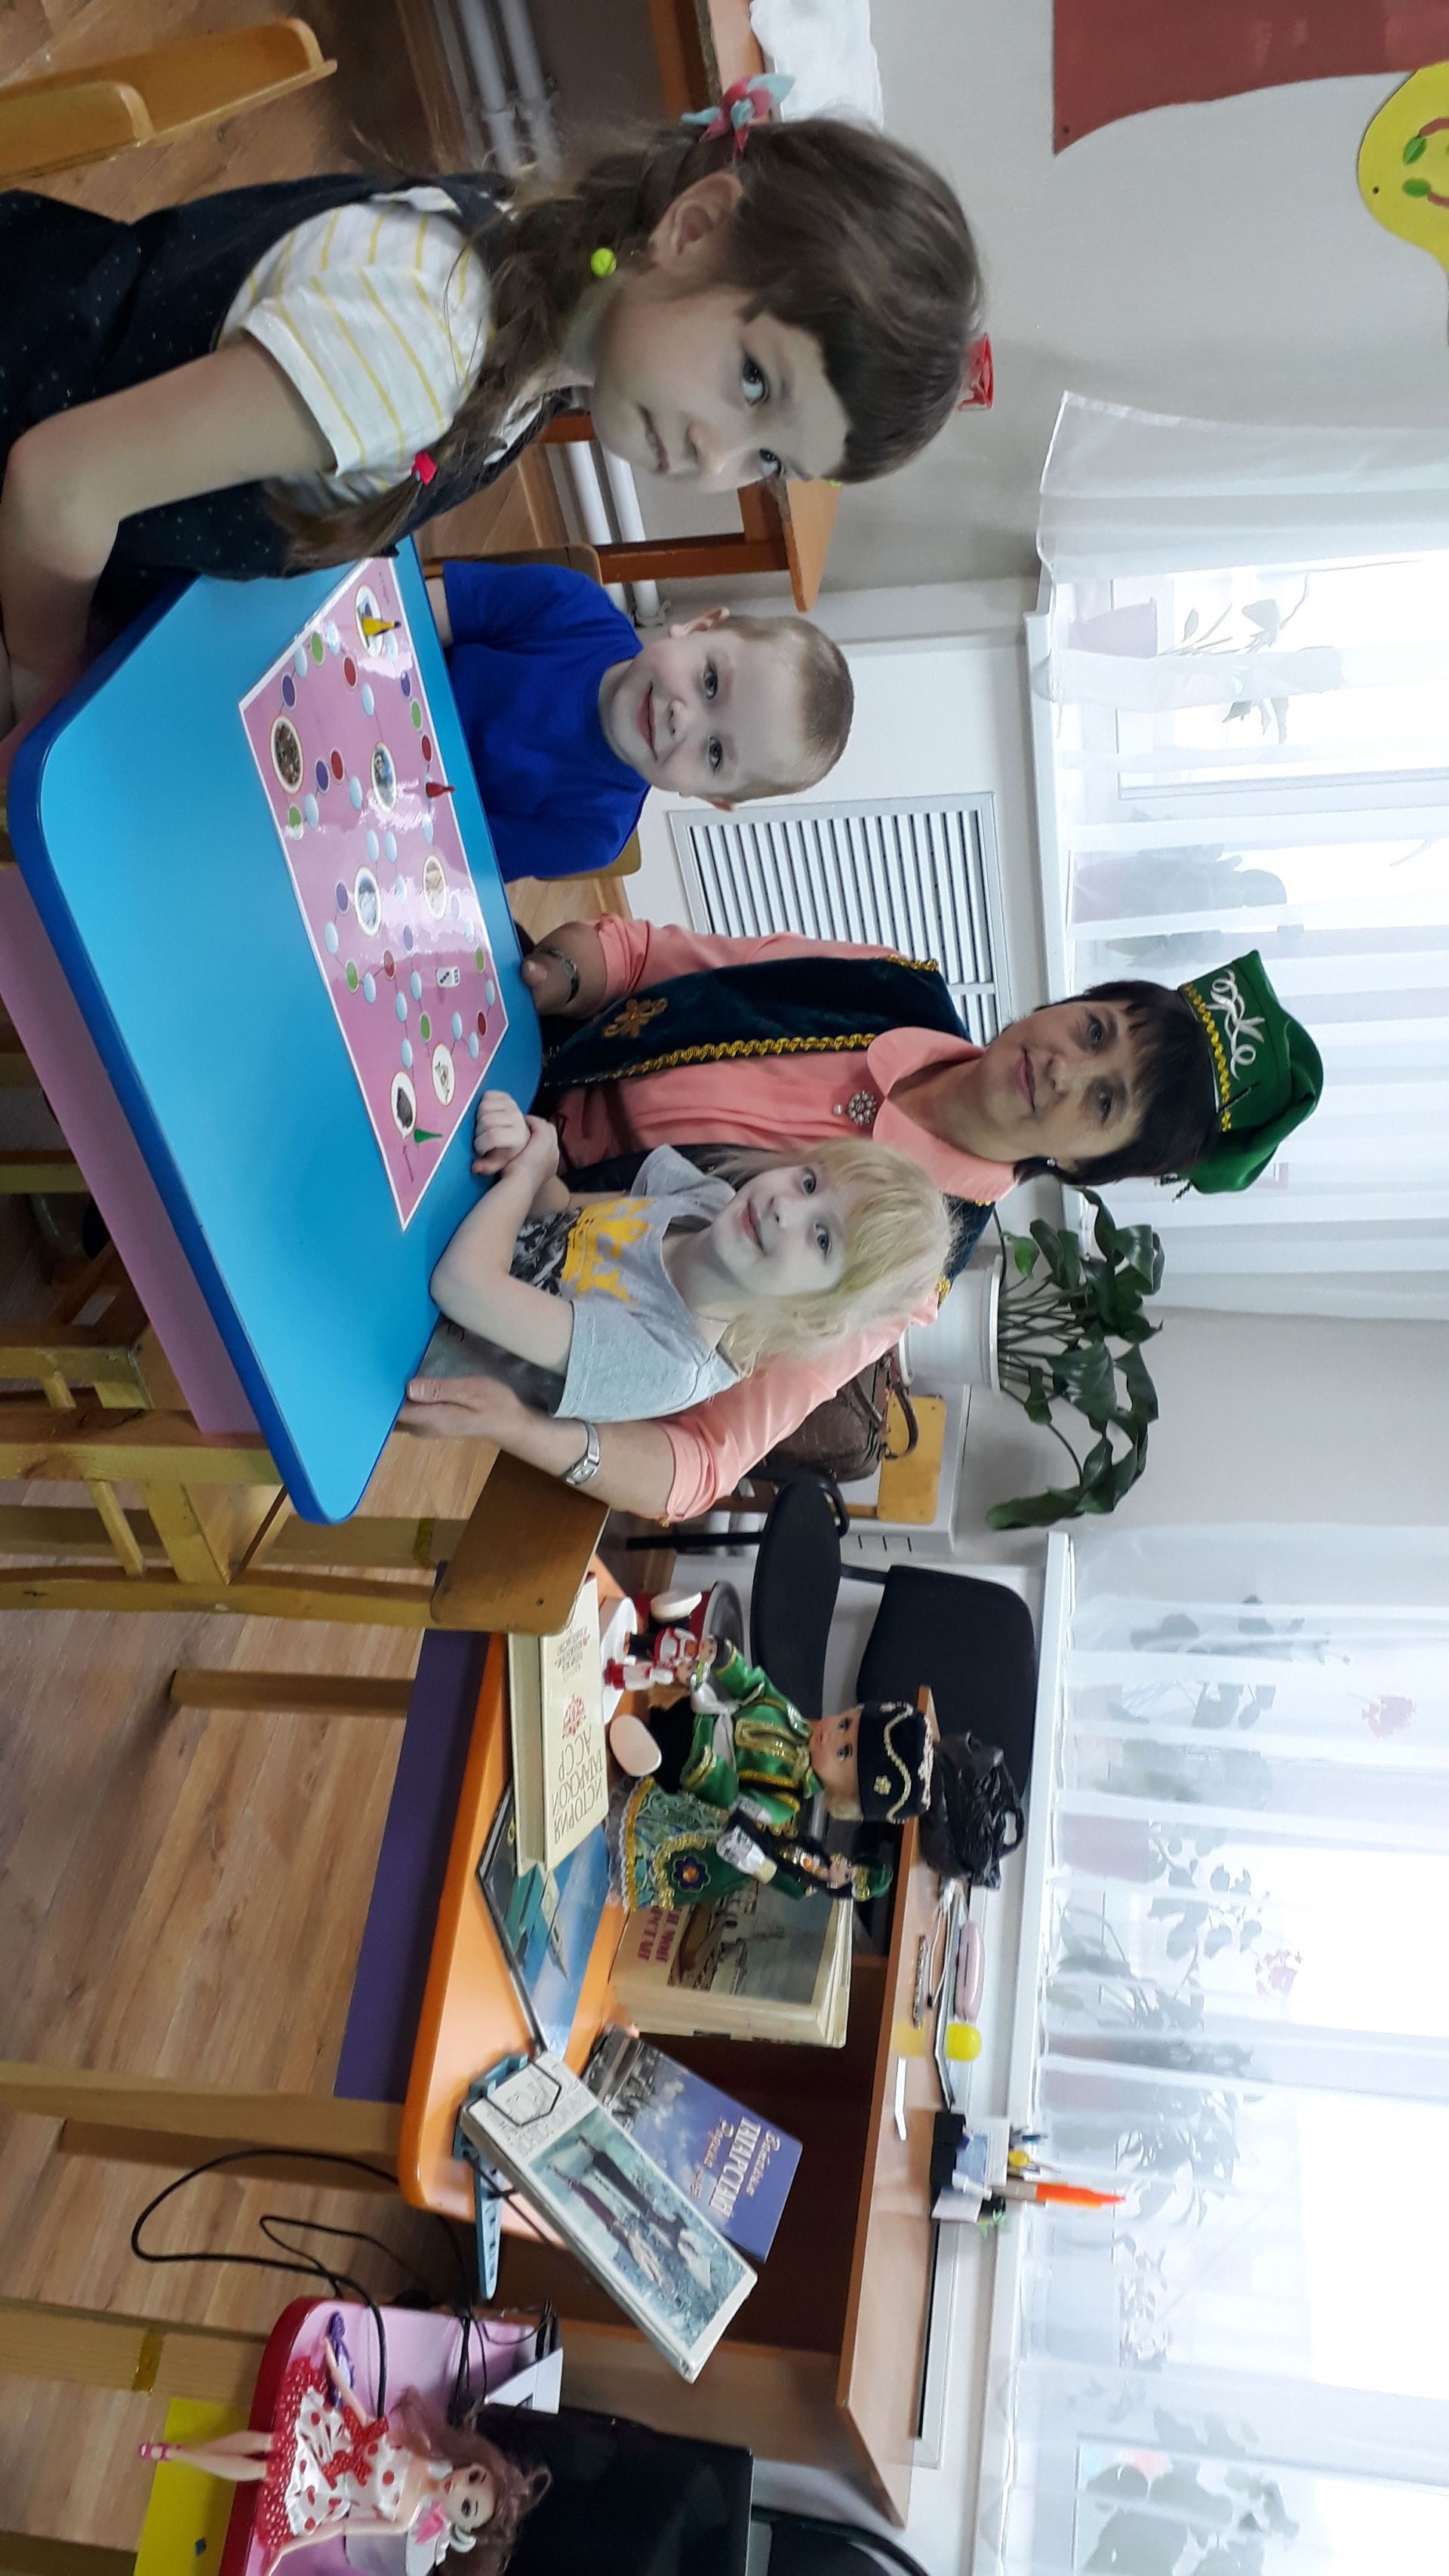 В Болгаре в детском саду "Антошка" прошло мероприятие, посвященное 100-летию ТАССР (ФОТО)